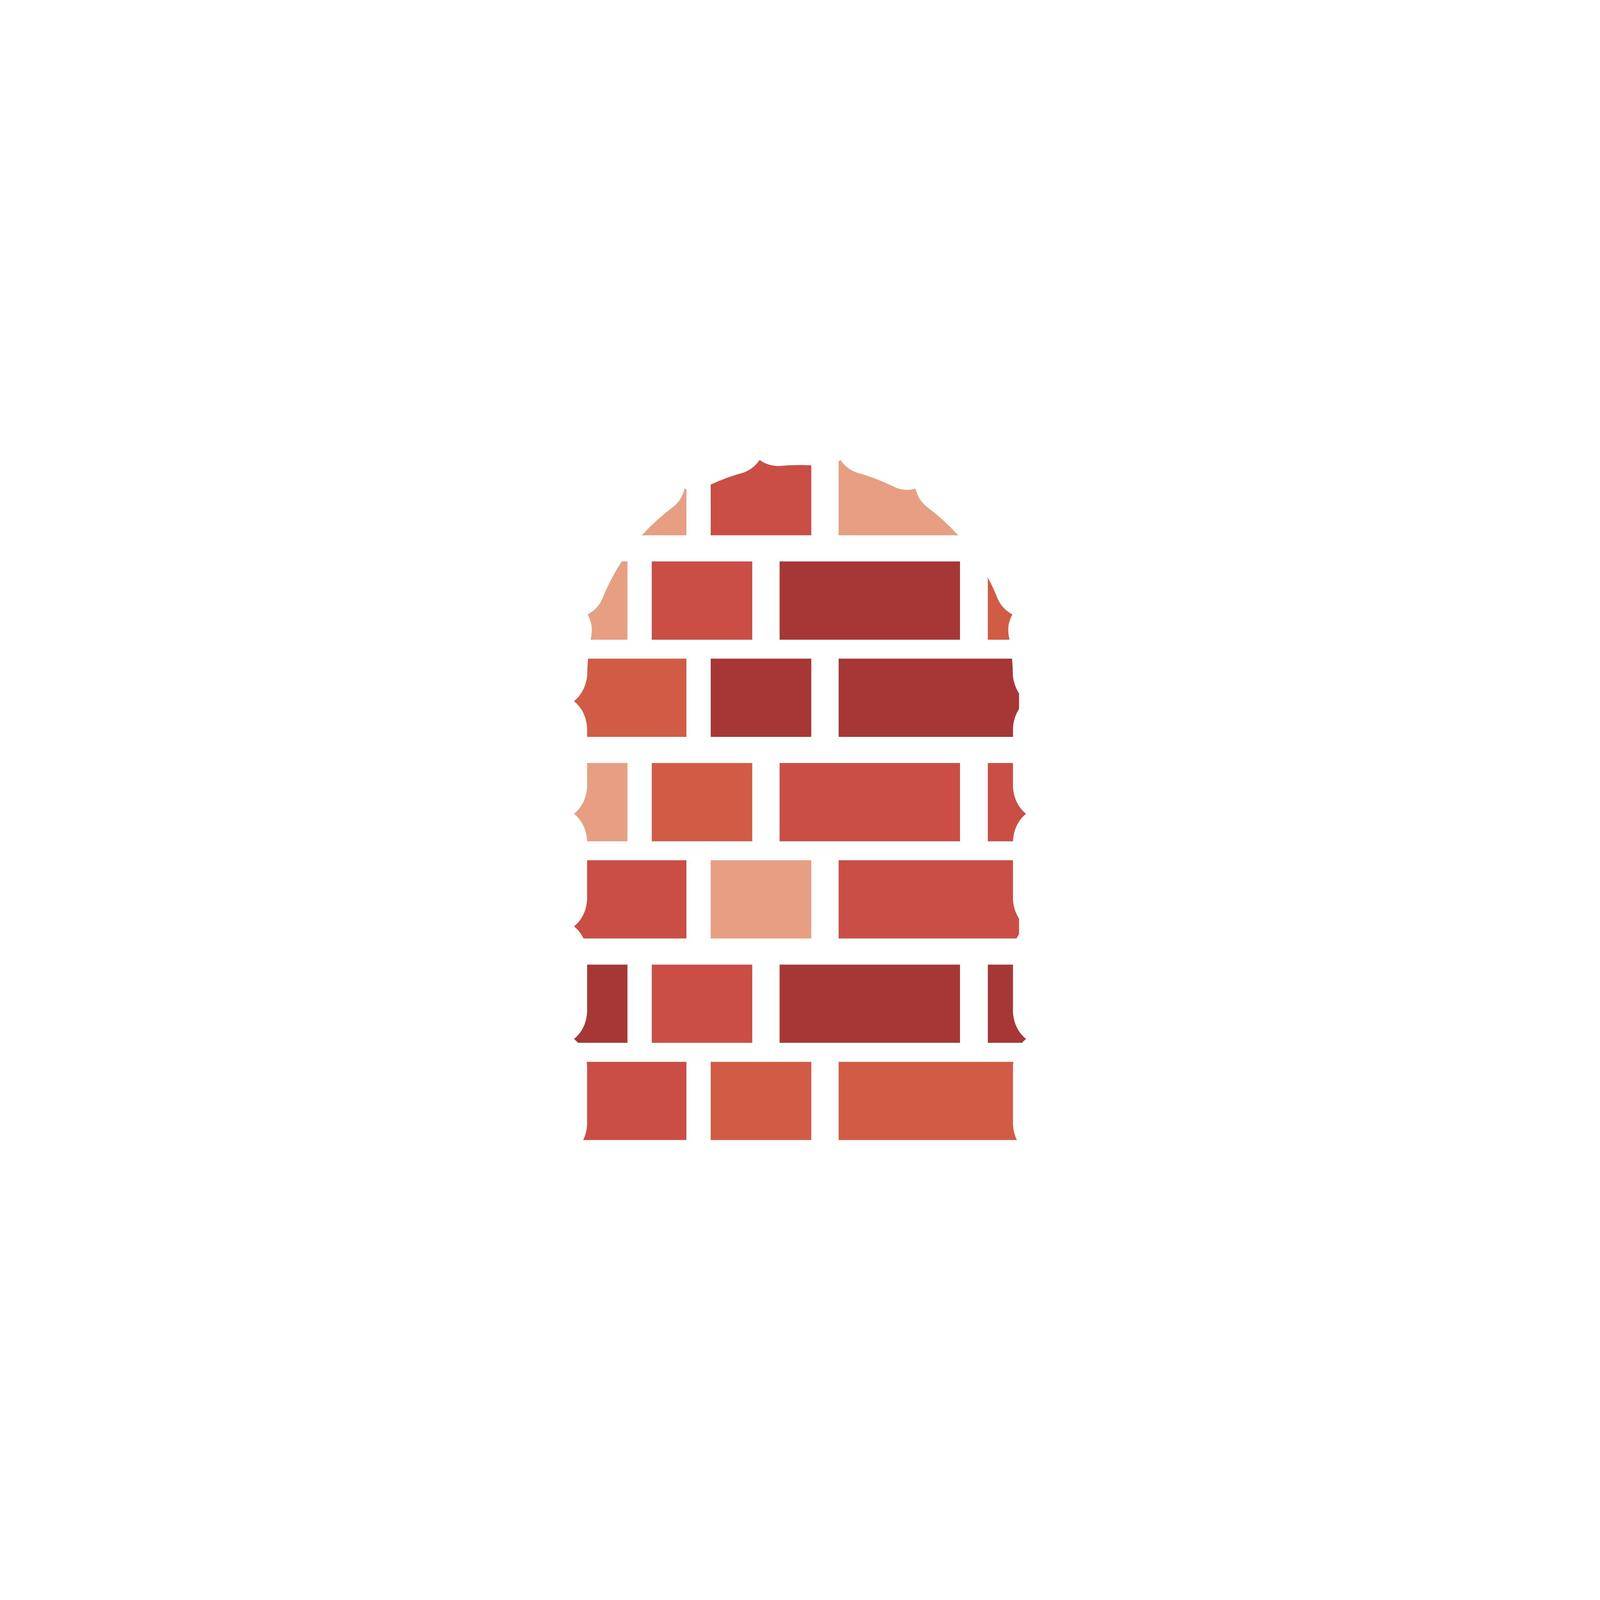 Brick wall by awk